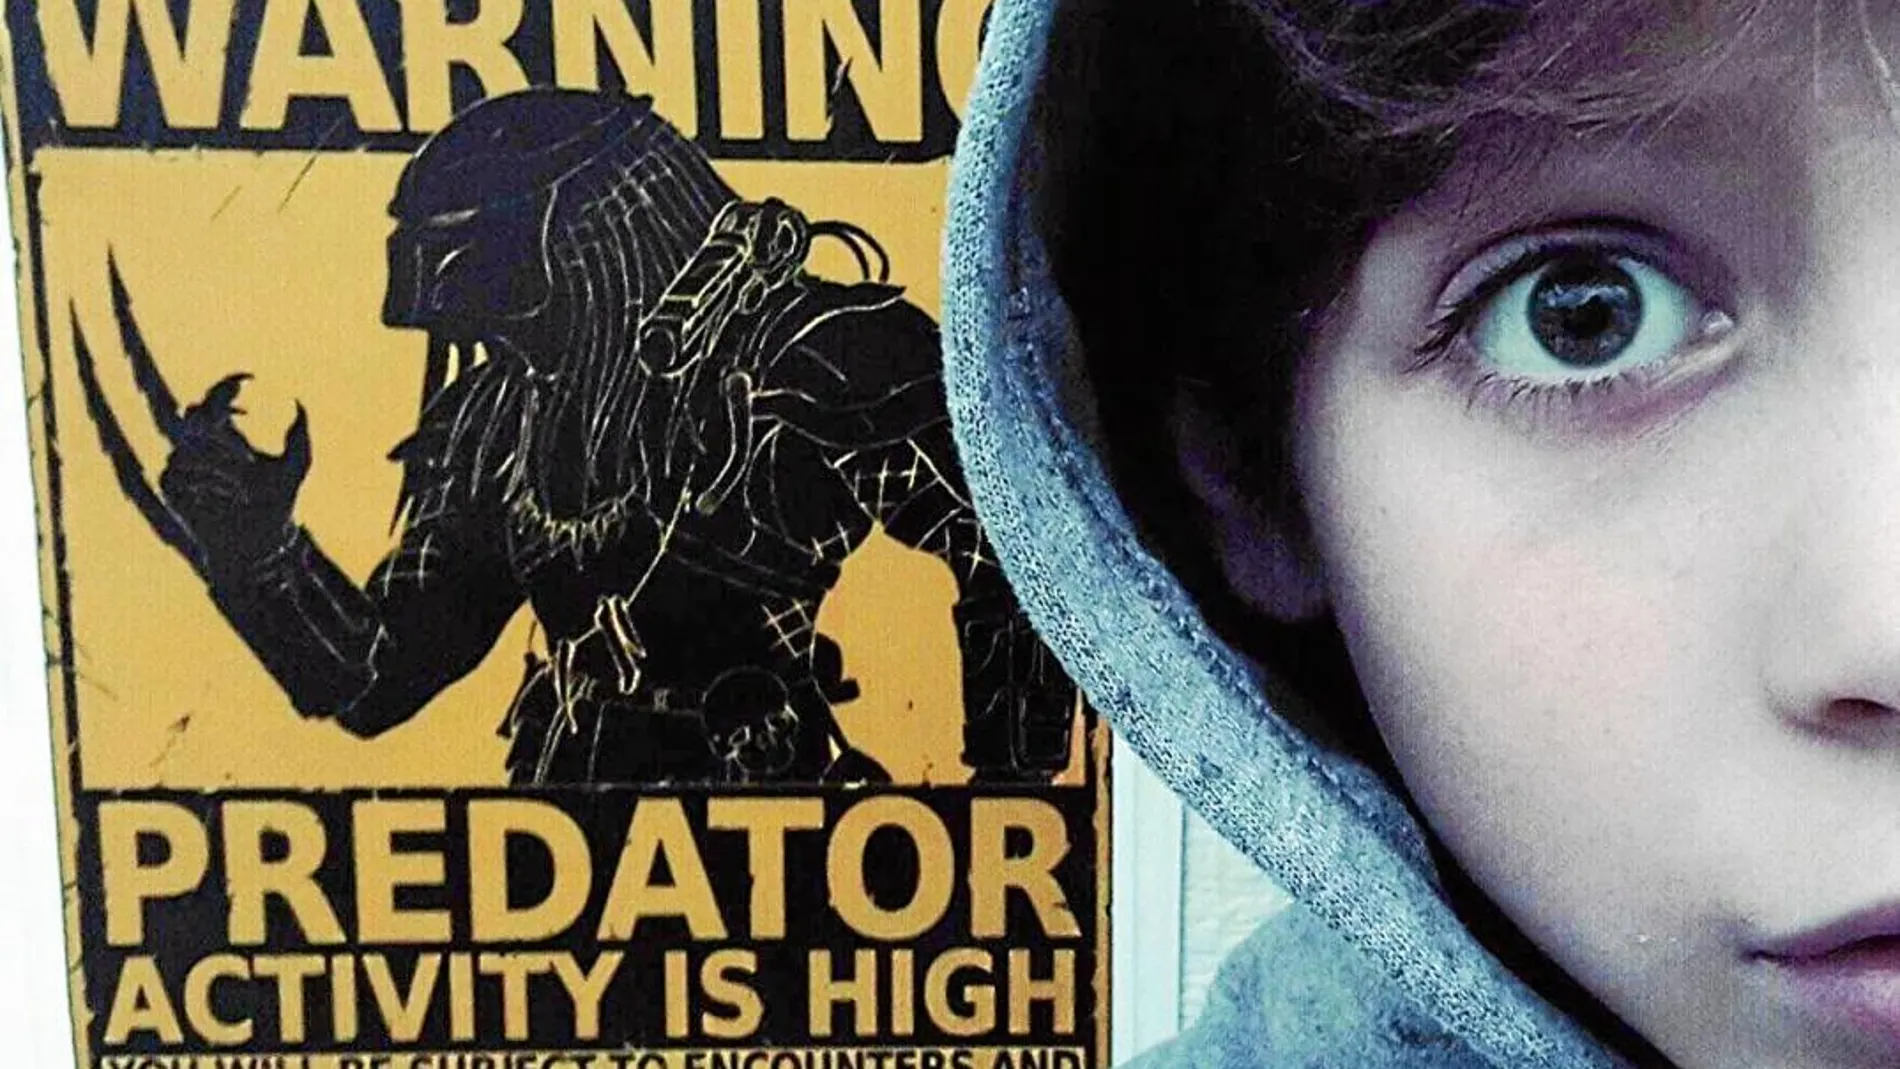 Un Yautja o Predator, la especie alienígena que da nombre al filme, cuarta entrega de la saga que arrancó en 1987